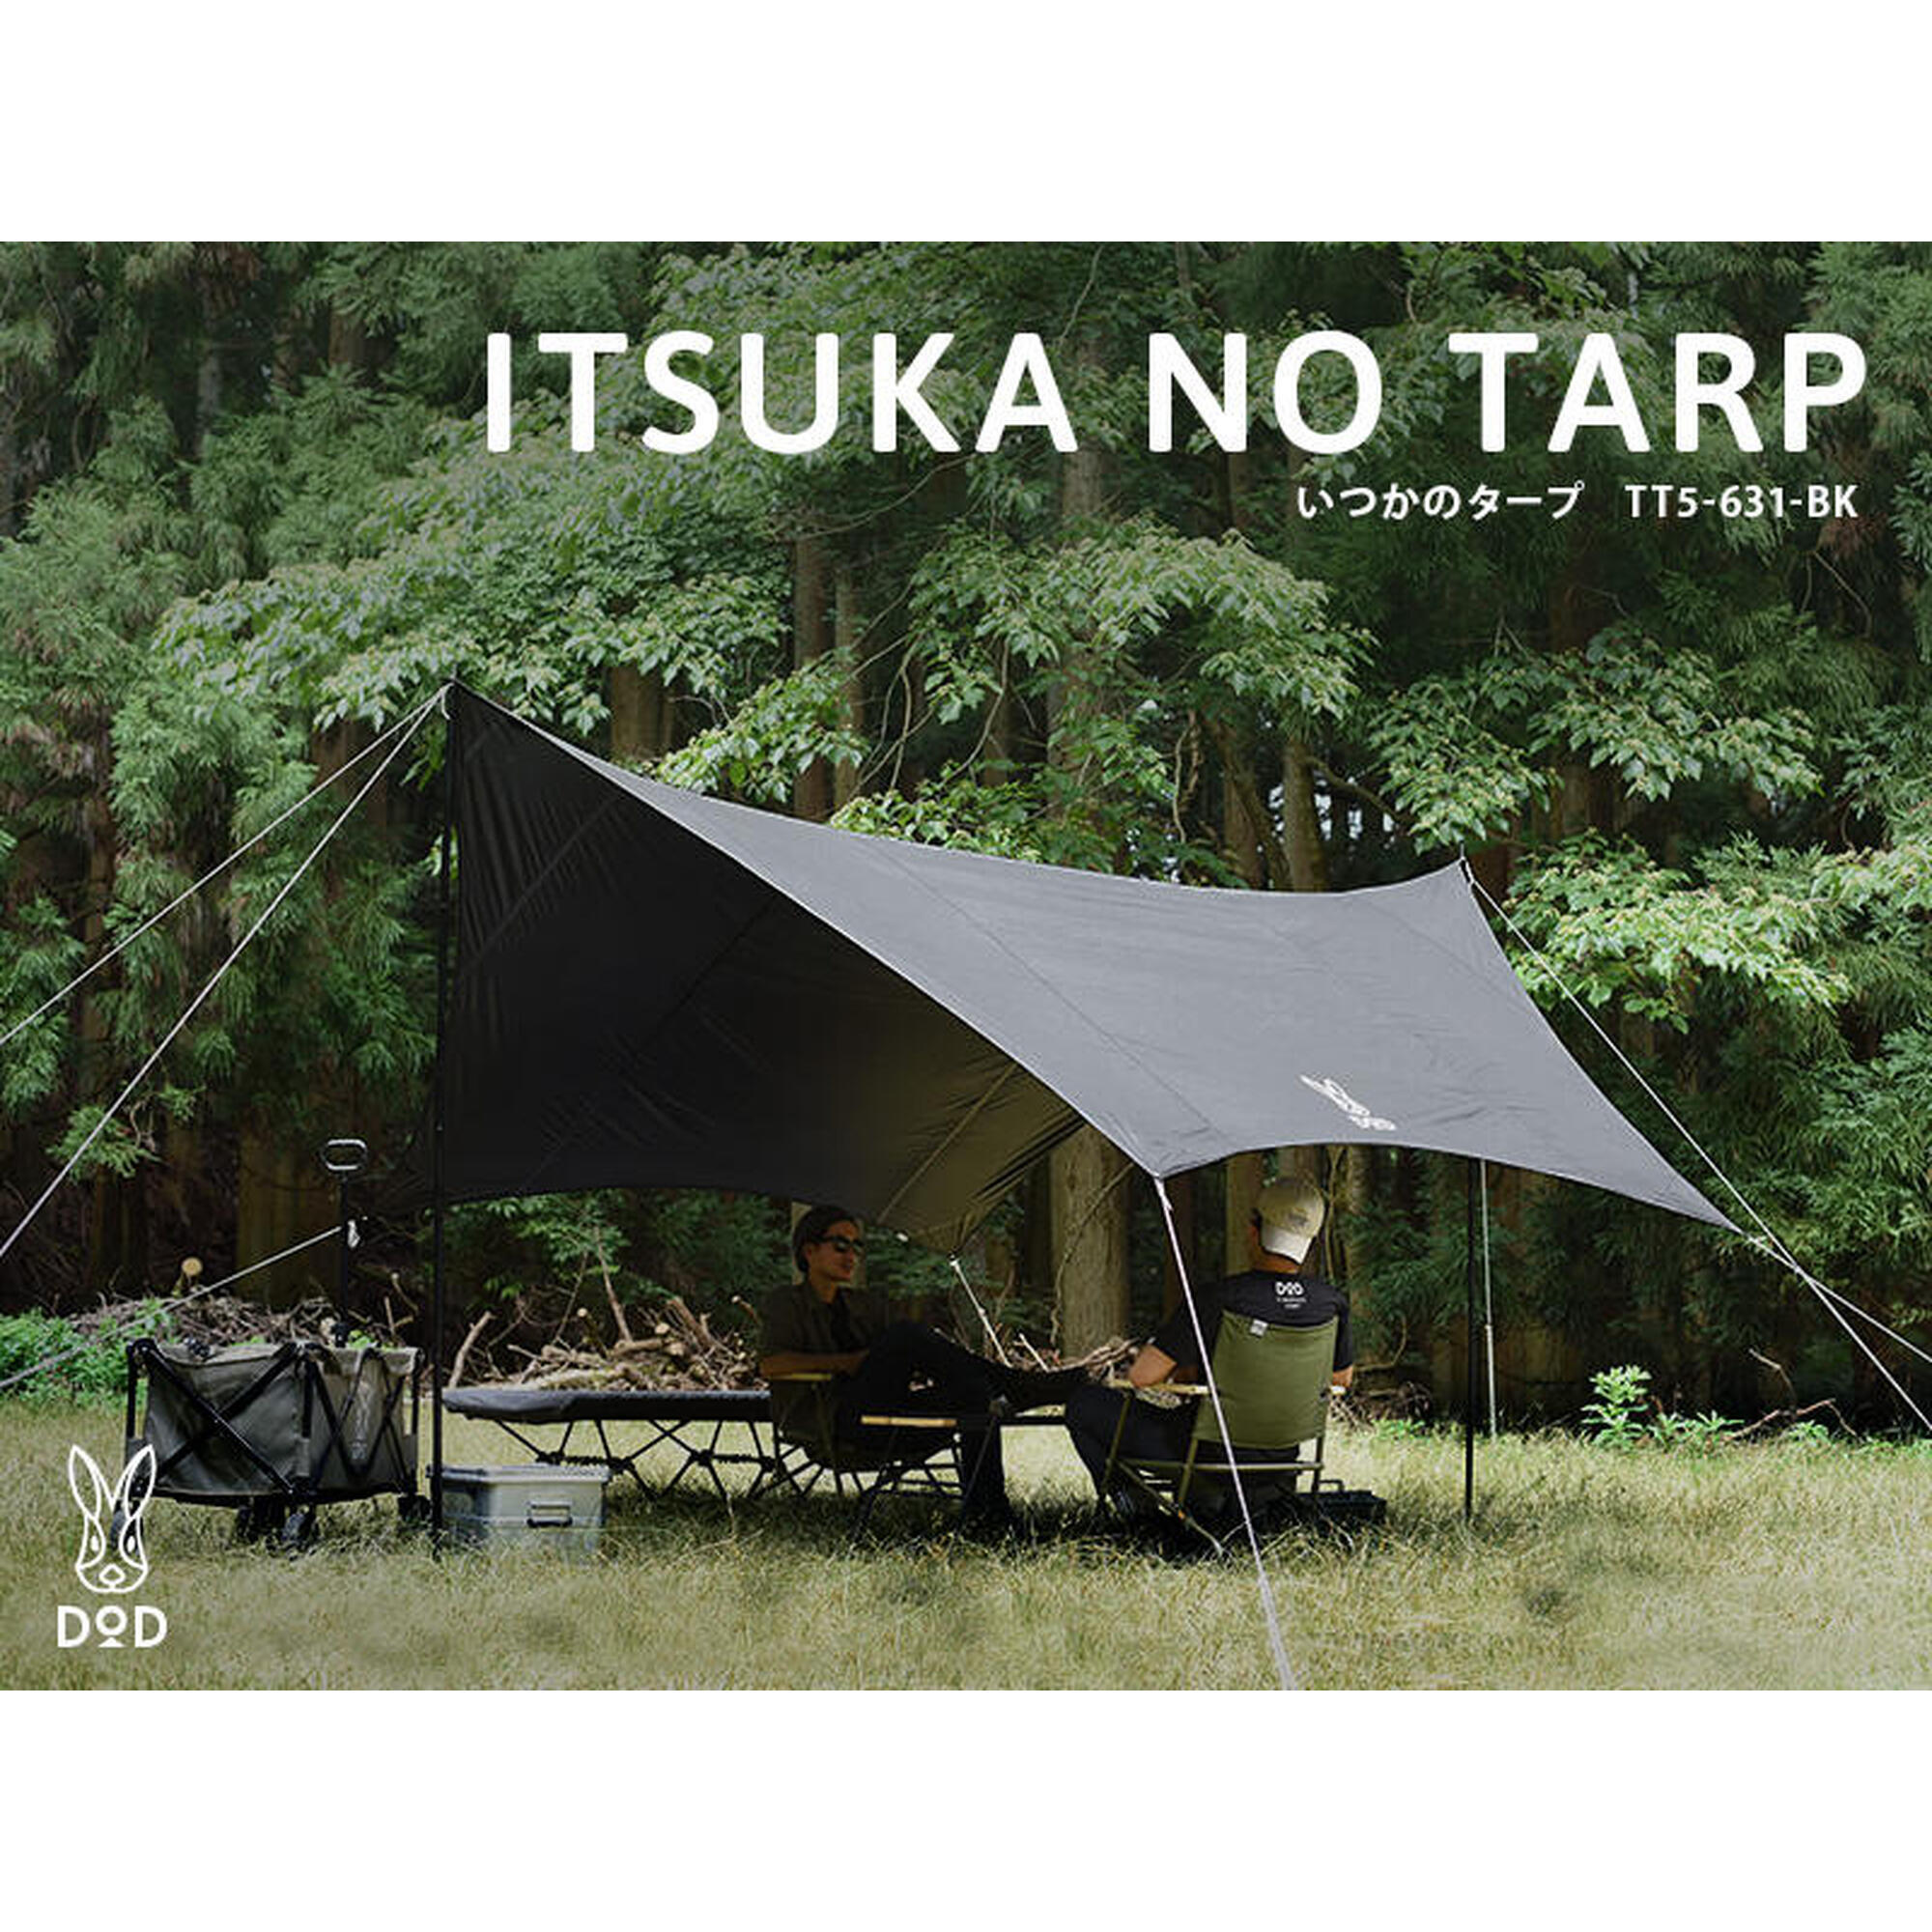 ITSUKA NO TARP TT5-631-BK 露營天幕 - 黑色